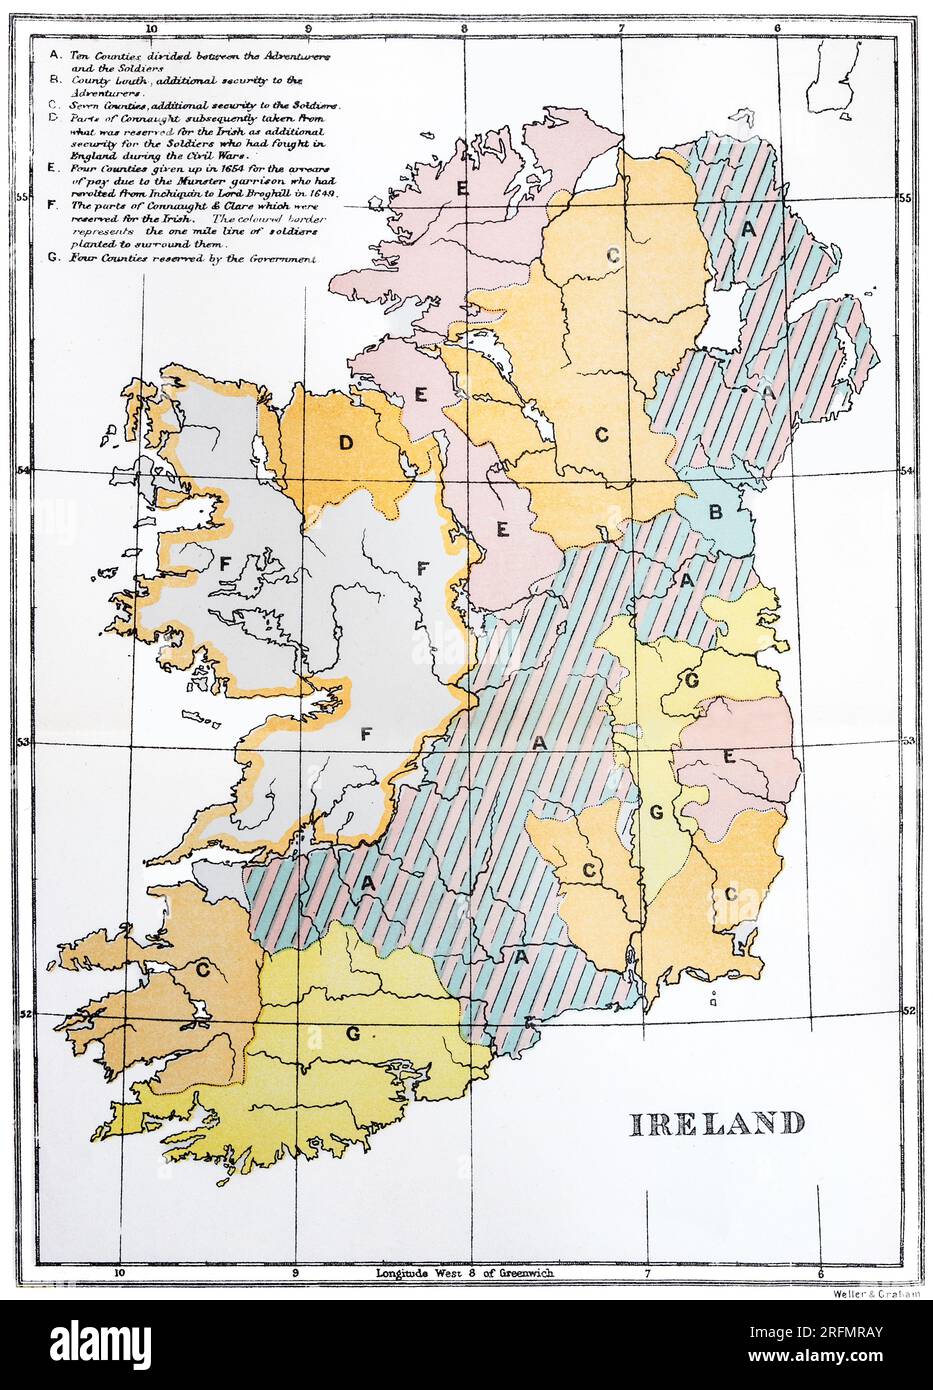 Una mappa della metà del XVII secolo che illustra la divisione dell'Irlanda dopo la ribellione irlandese del 1641, quando la maggior parte dell'Irlanda passò sotto il controllo della Confederazione cattolica irlandese che si alleò con i realisti inglesi. Nel maggio 1652, l'esercito parlamentare di Cromwell aveva sconfitto la coalizione confederata e realista in Irlanda e aveva occupato il paese, ponendo fine alle guerre confederate irlandesi (o Guerra degli undici anni). Come punizione per la ribellione del 1641, quasi tutte le terre di proprietà dei cattolici irlandesi furono confiscate, date ai coloni britannici e ai precedenti proprietari trapiantati nel Connacht. Foto Stock